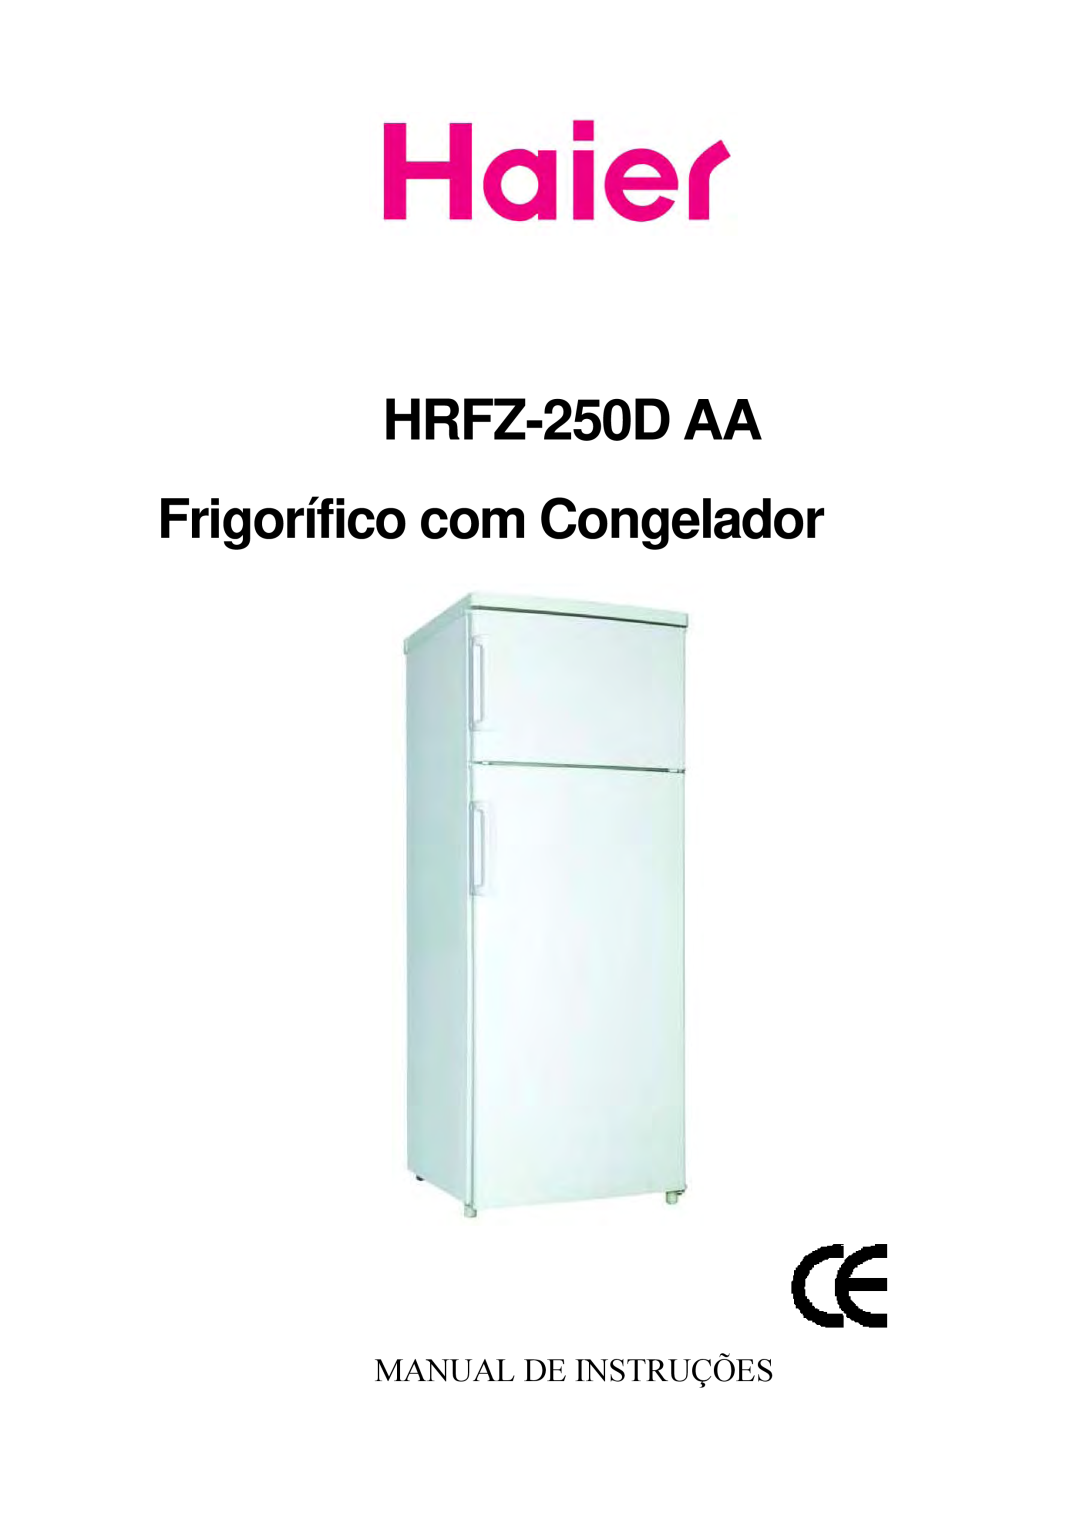 Haier HRFZ-250D AA manual HRFZ-250DAA, Frigorífico com Congelador, Manual De Instruções 